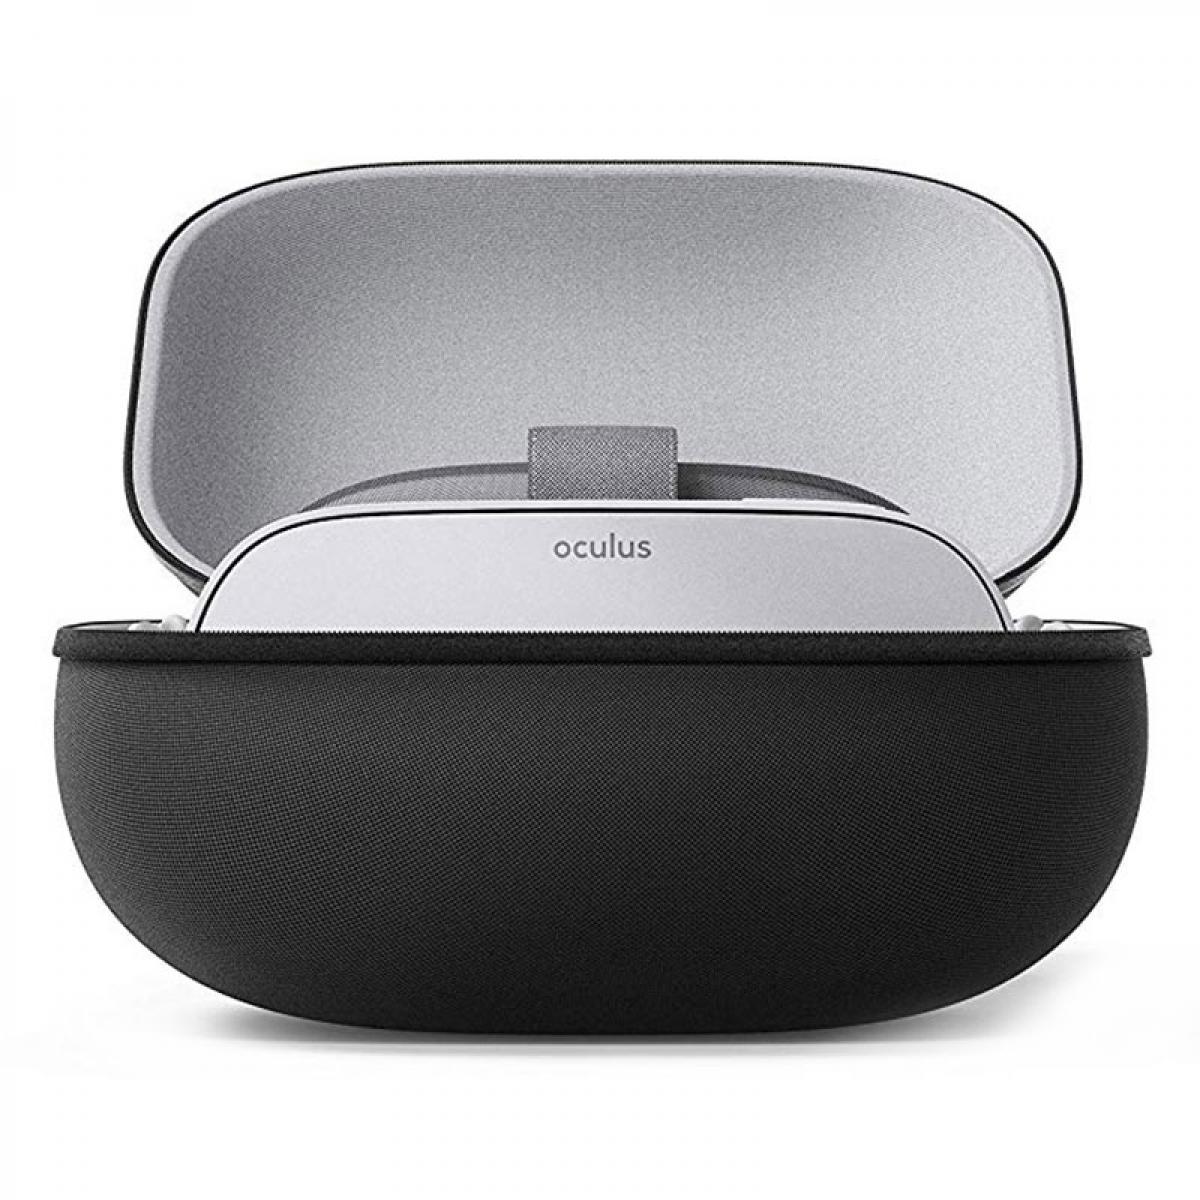 Oculus - Oculus Boîtier VR - Casques de réalité virtuelle